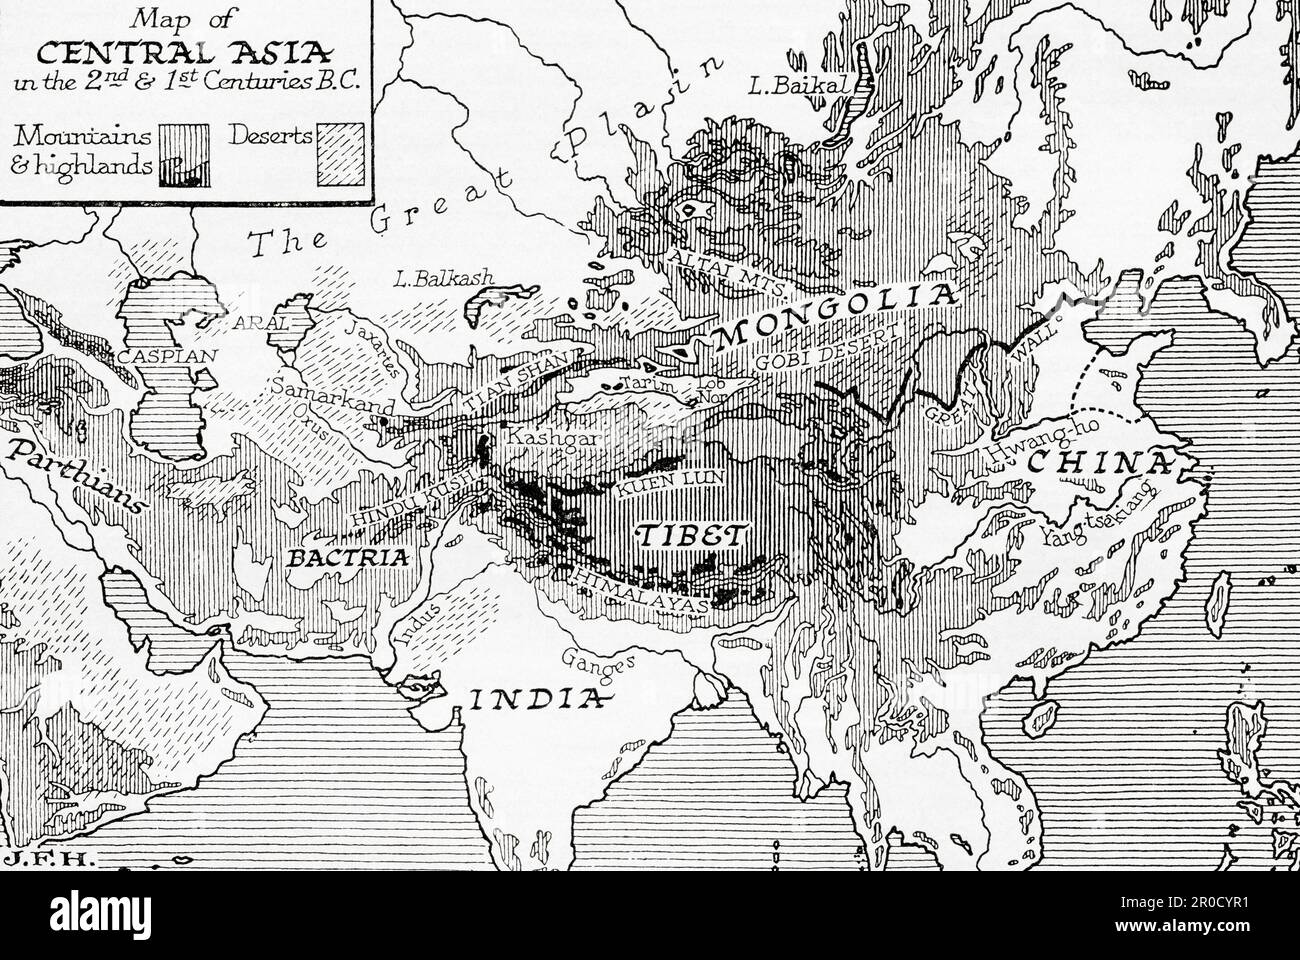 Mappa dell'Asia Centrale nei secoli 2nd e 1st a.C. Dal libro Outline of History di H.G. Wells, pubblicato nel 1920. Foto Stock